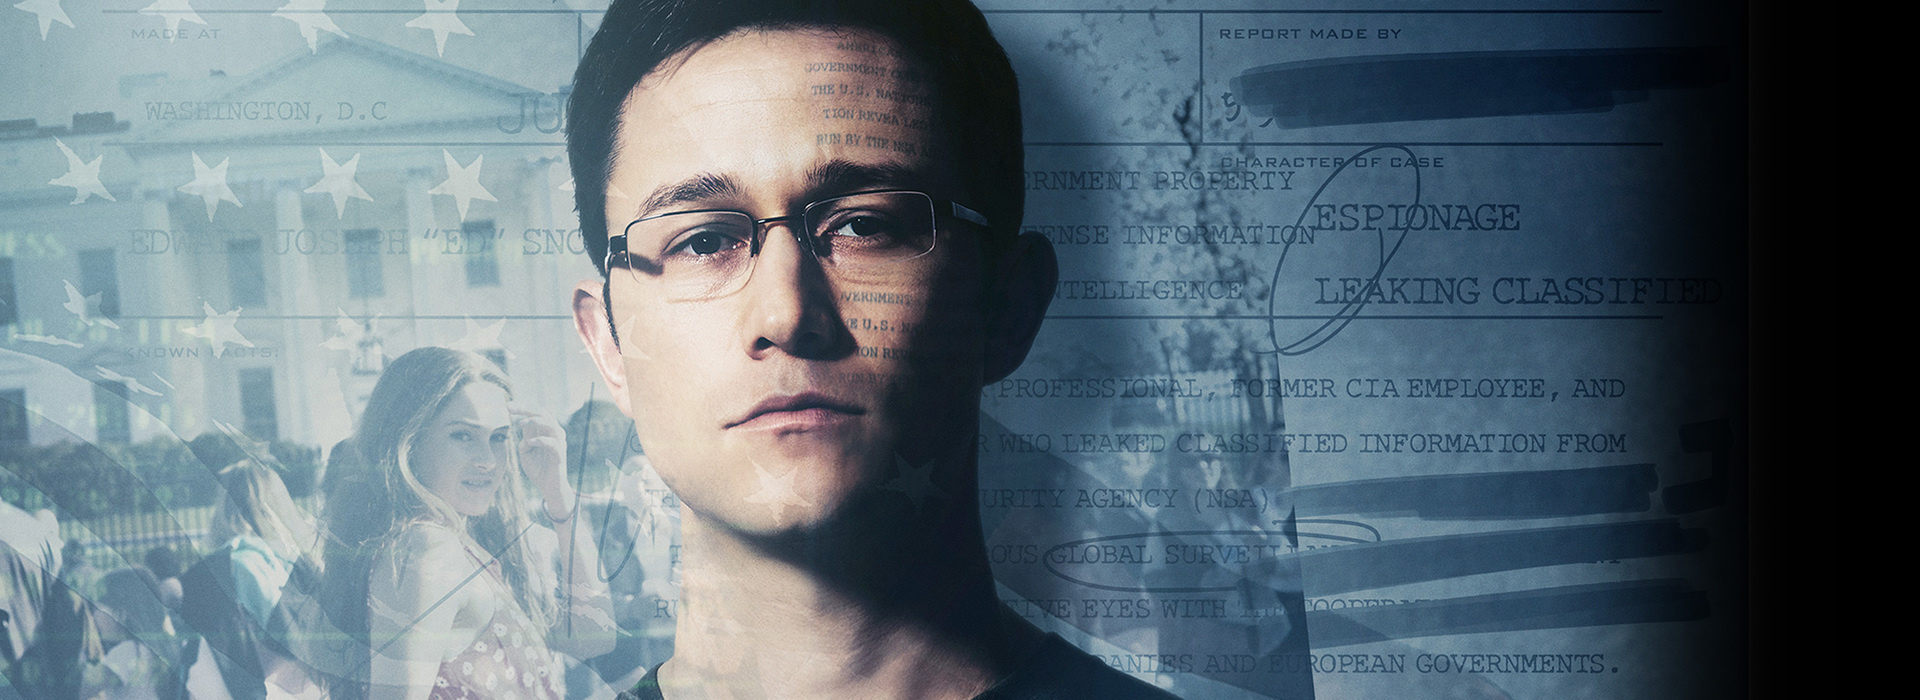 Movie poster Snowden